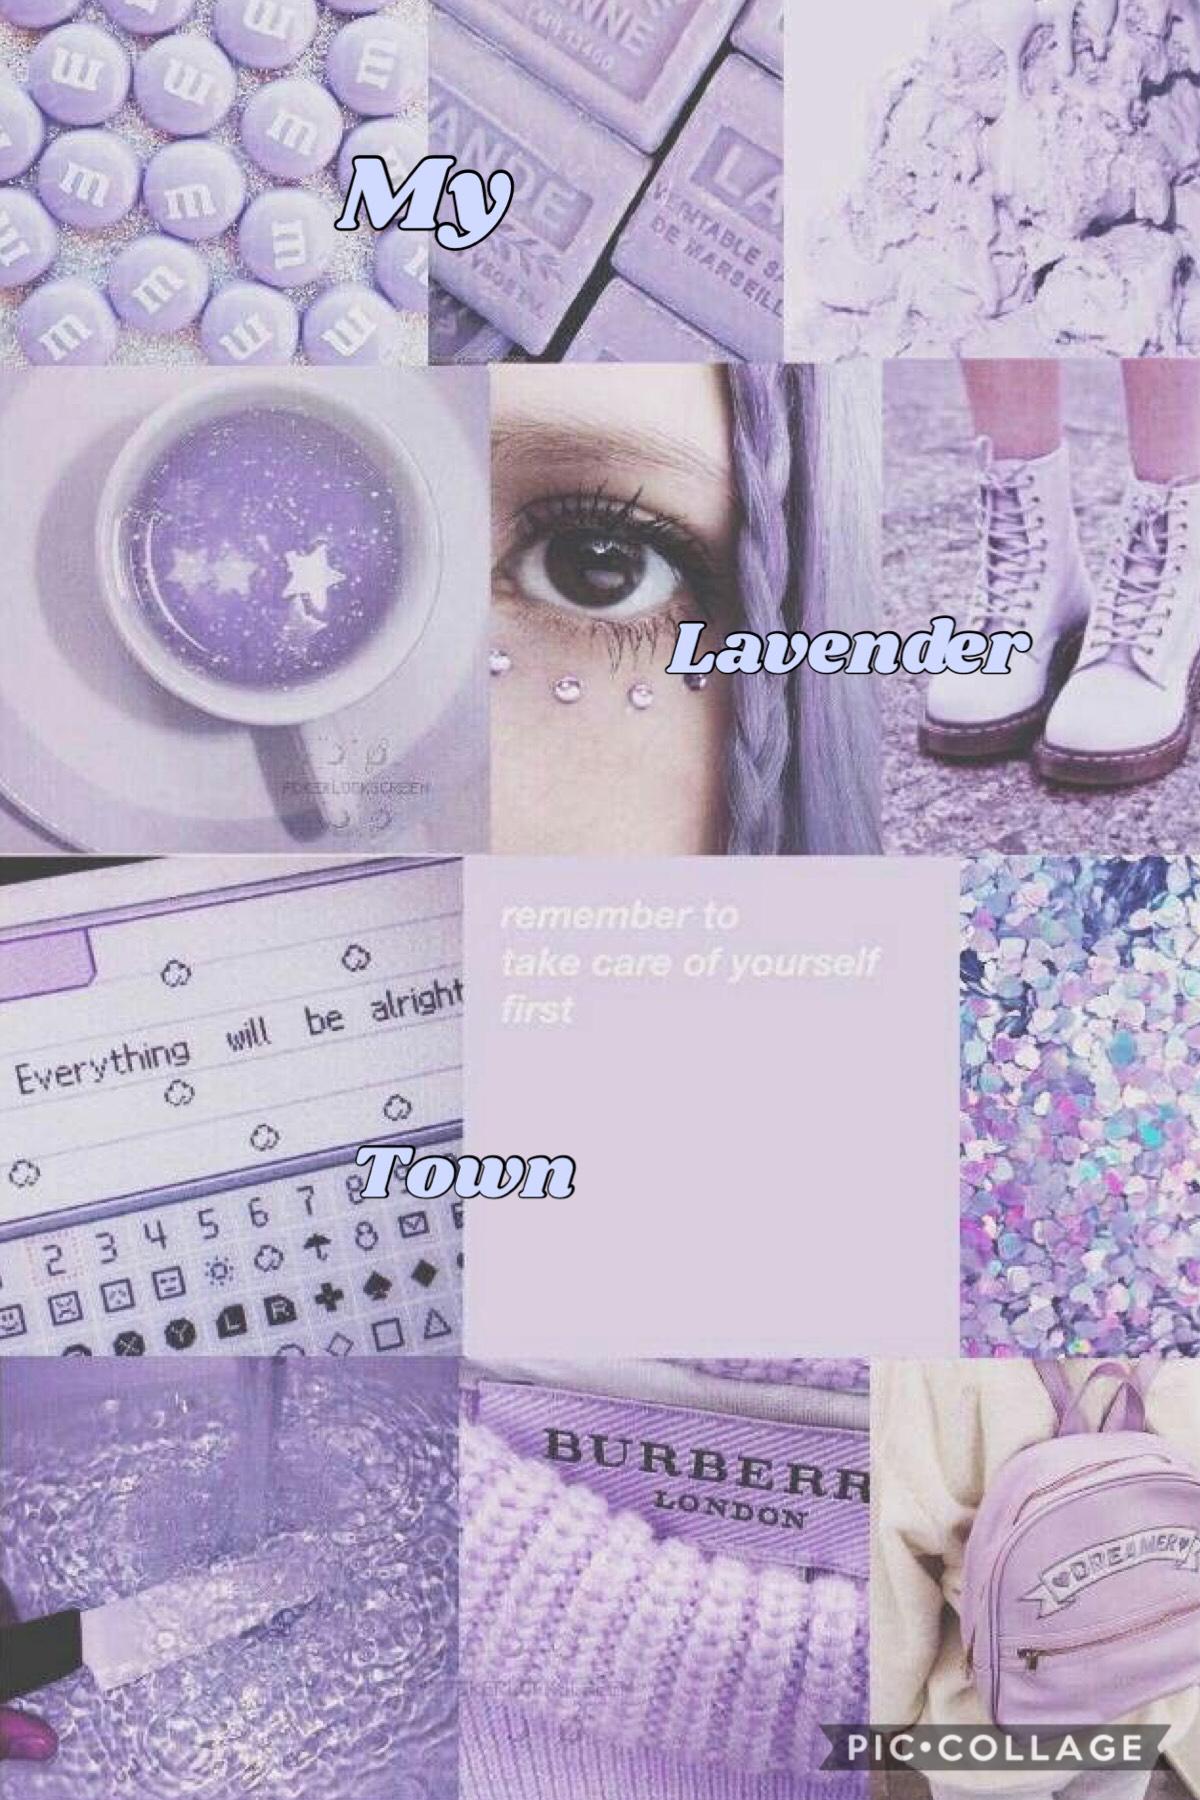 My lavender townnnn